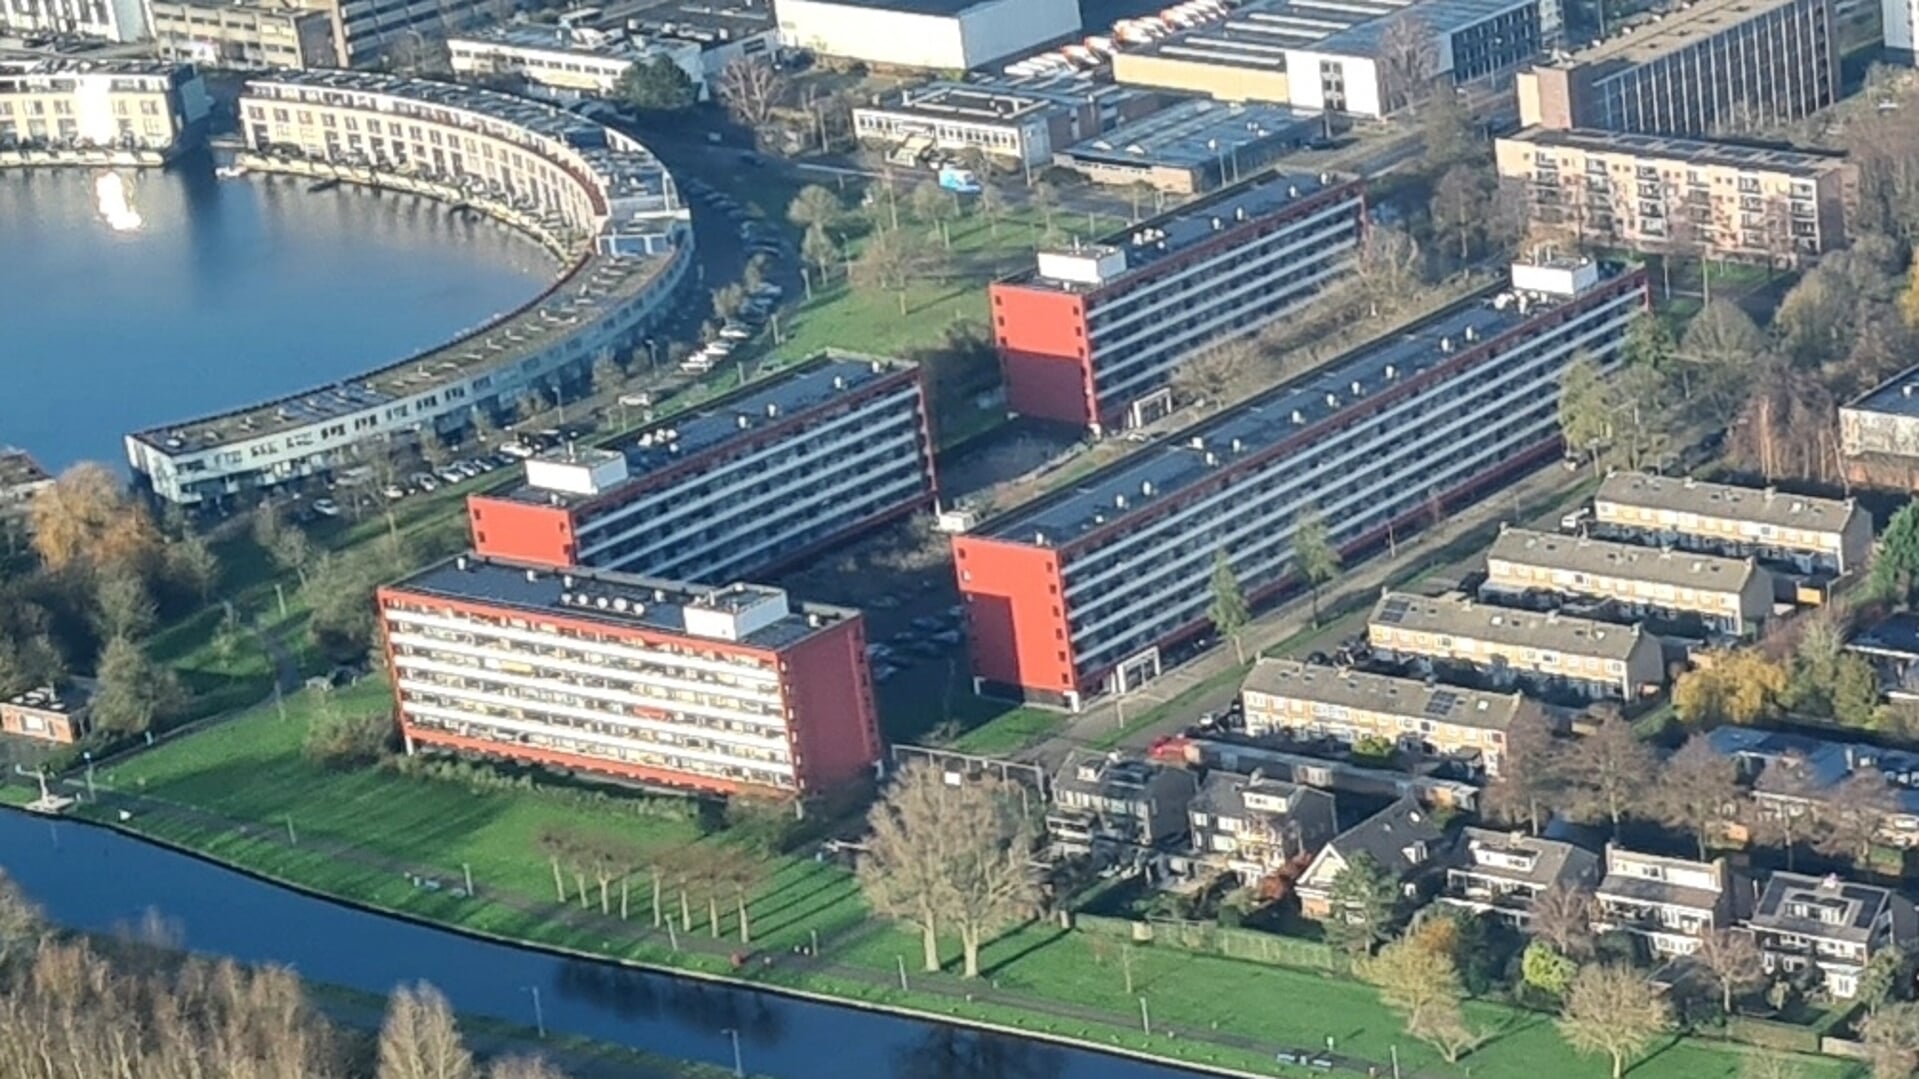 De flats aan de Keulsevaartstraat zijn vochtig en tochtig. Ook de vier rijtjes eengezinswoningen rechts op de foto behoren overigens tot de Keulsevaartstraat.